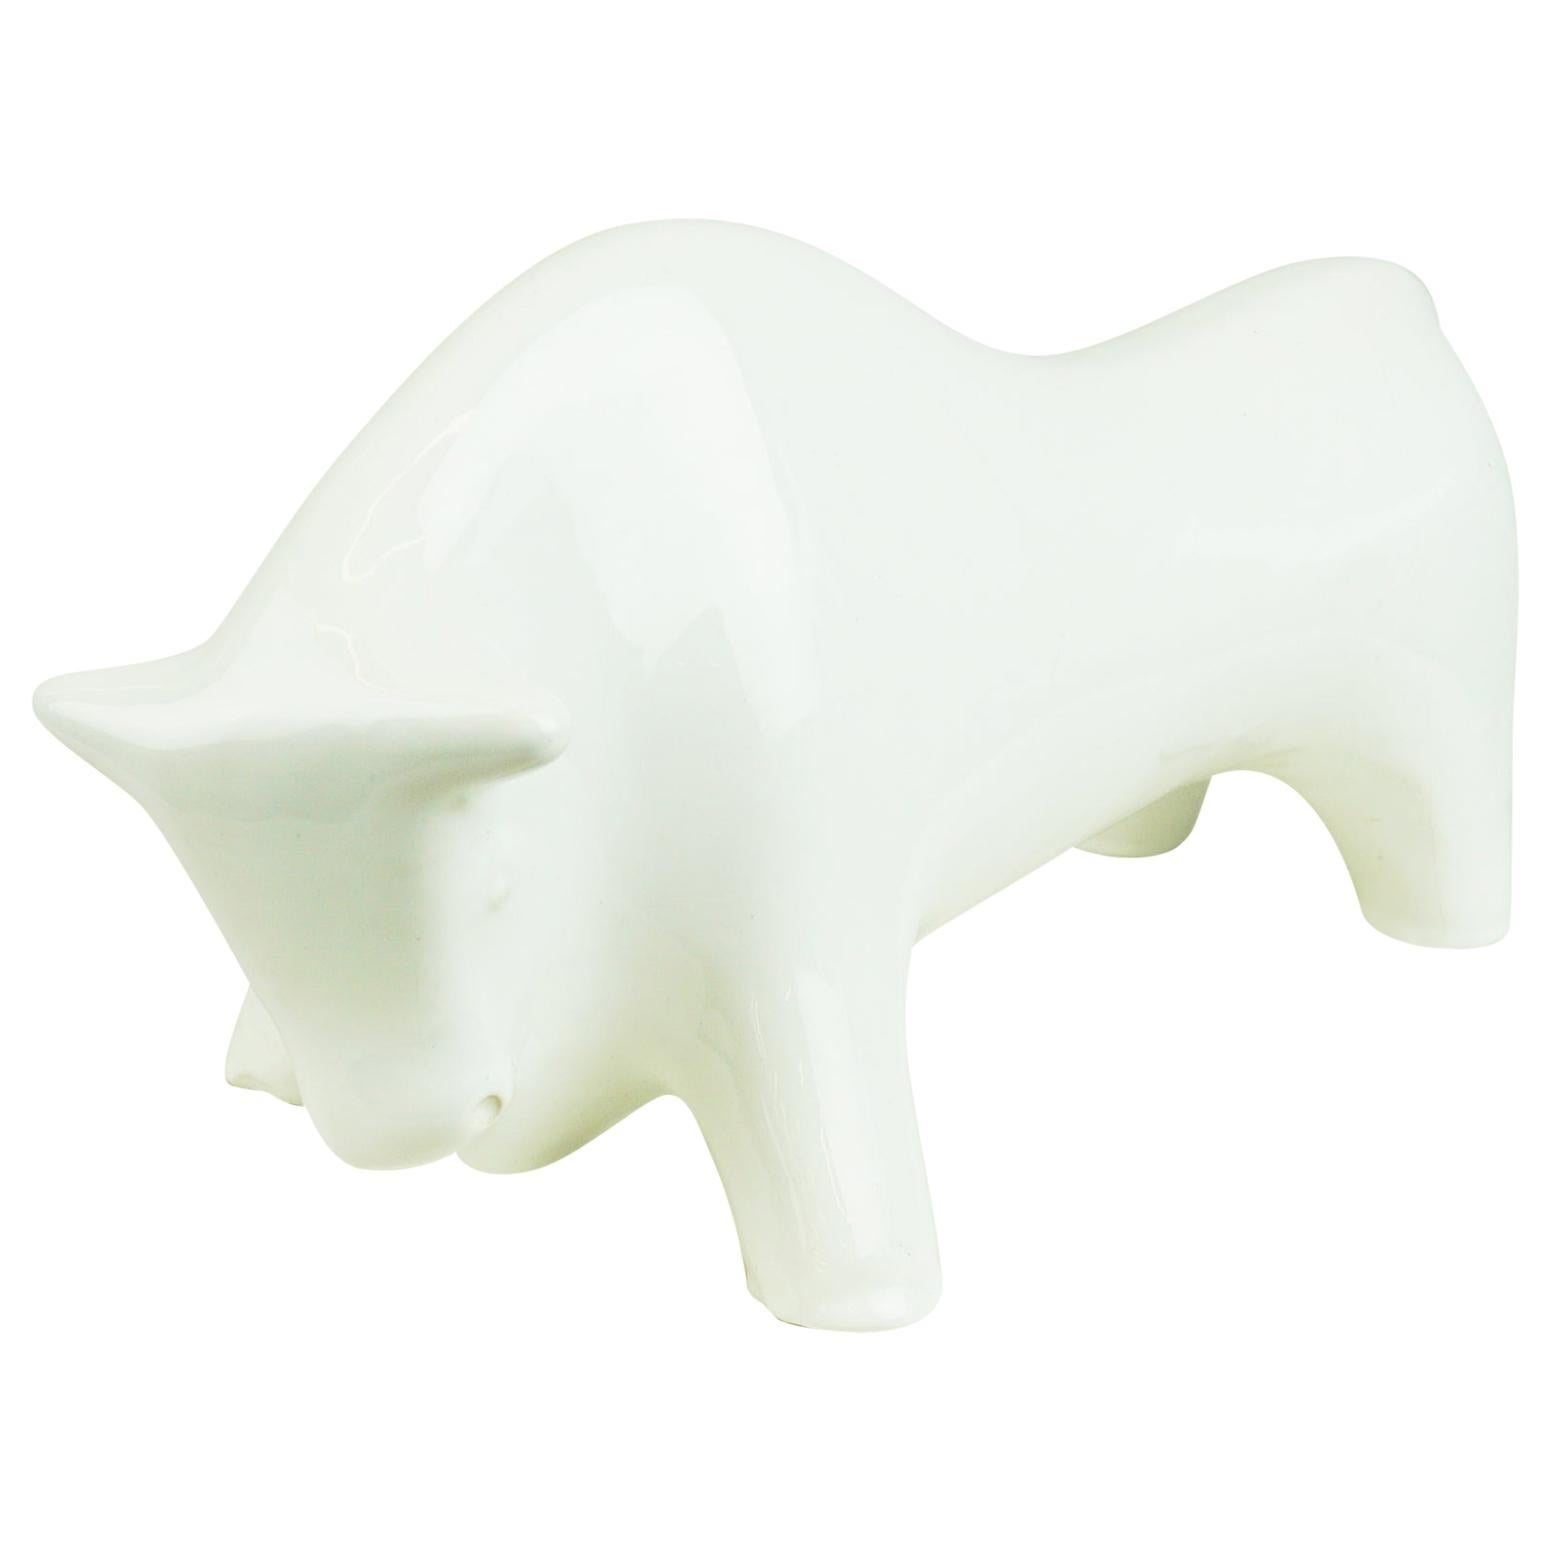 Italian Midcentury White Glazed Bull Designed by Aldo Londi for Bitossi